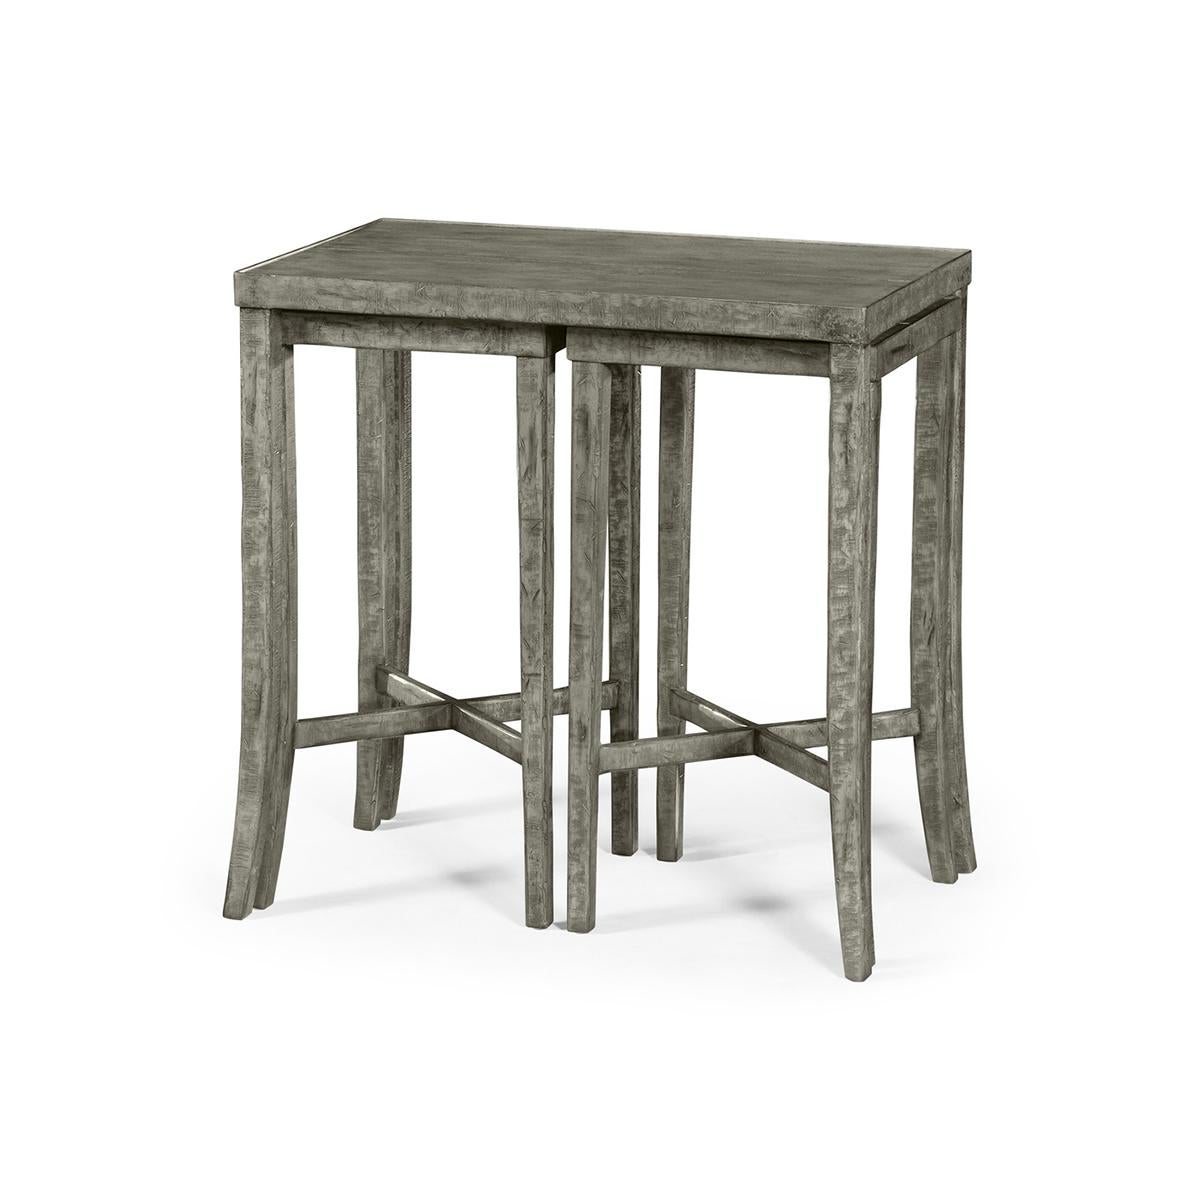 Tables gigognes rustiques de style campagnard, ces tables gigognes gris foncé présentent deux petites tables qui se glissent sous la table principale.

Dimensions : 28